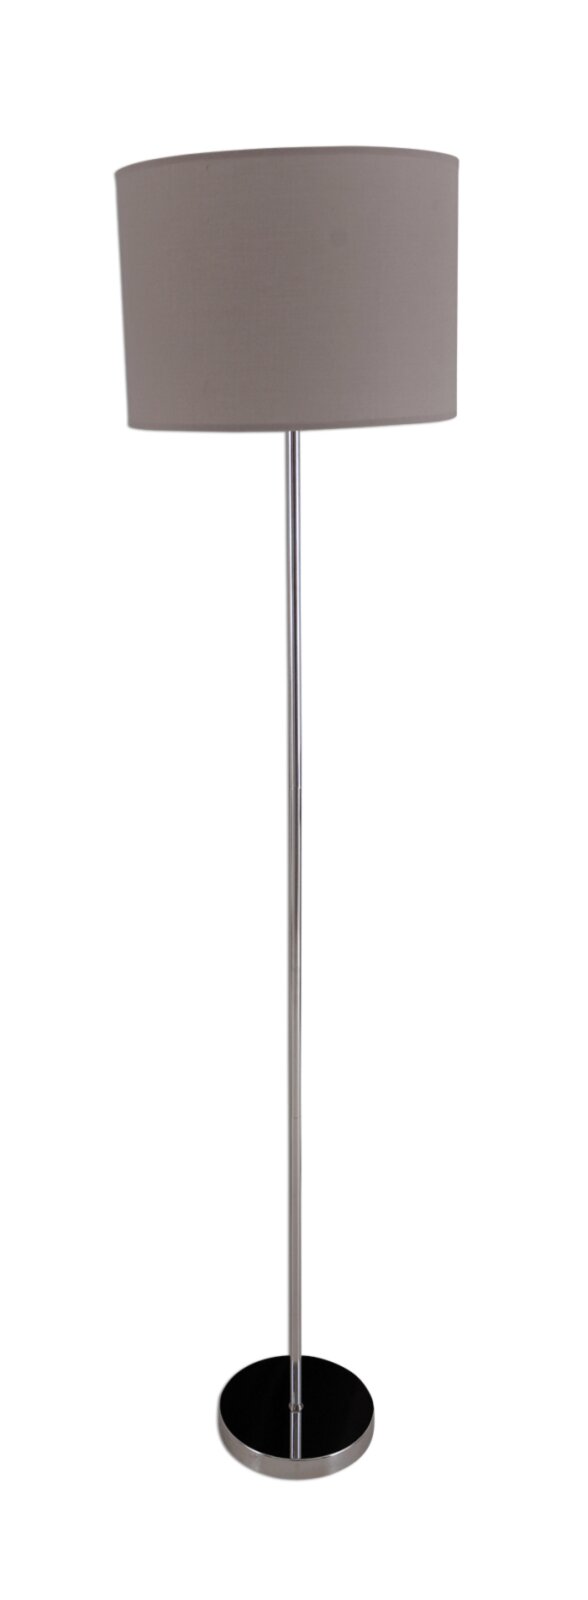 NEW Stehlampe ROLLER bei | Online - - grau kaufen cm 160 YORK